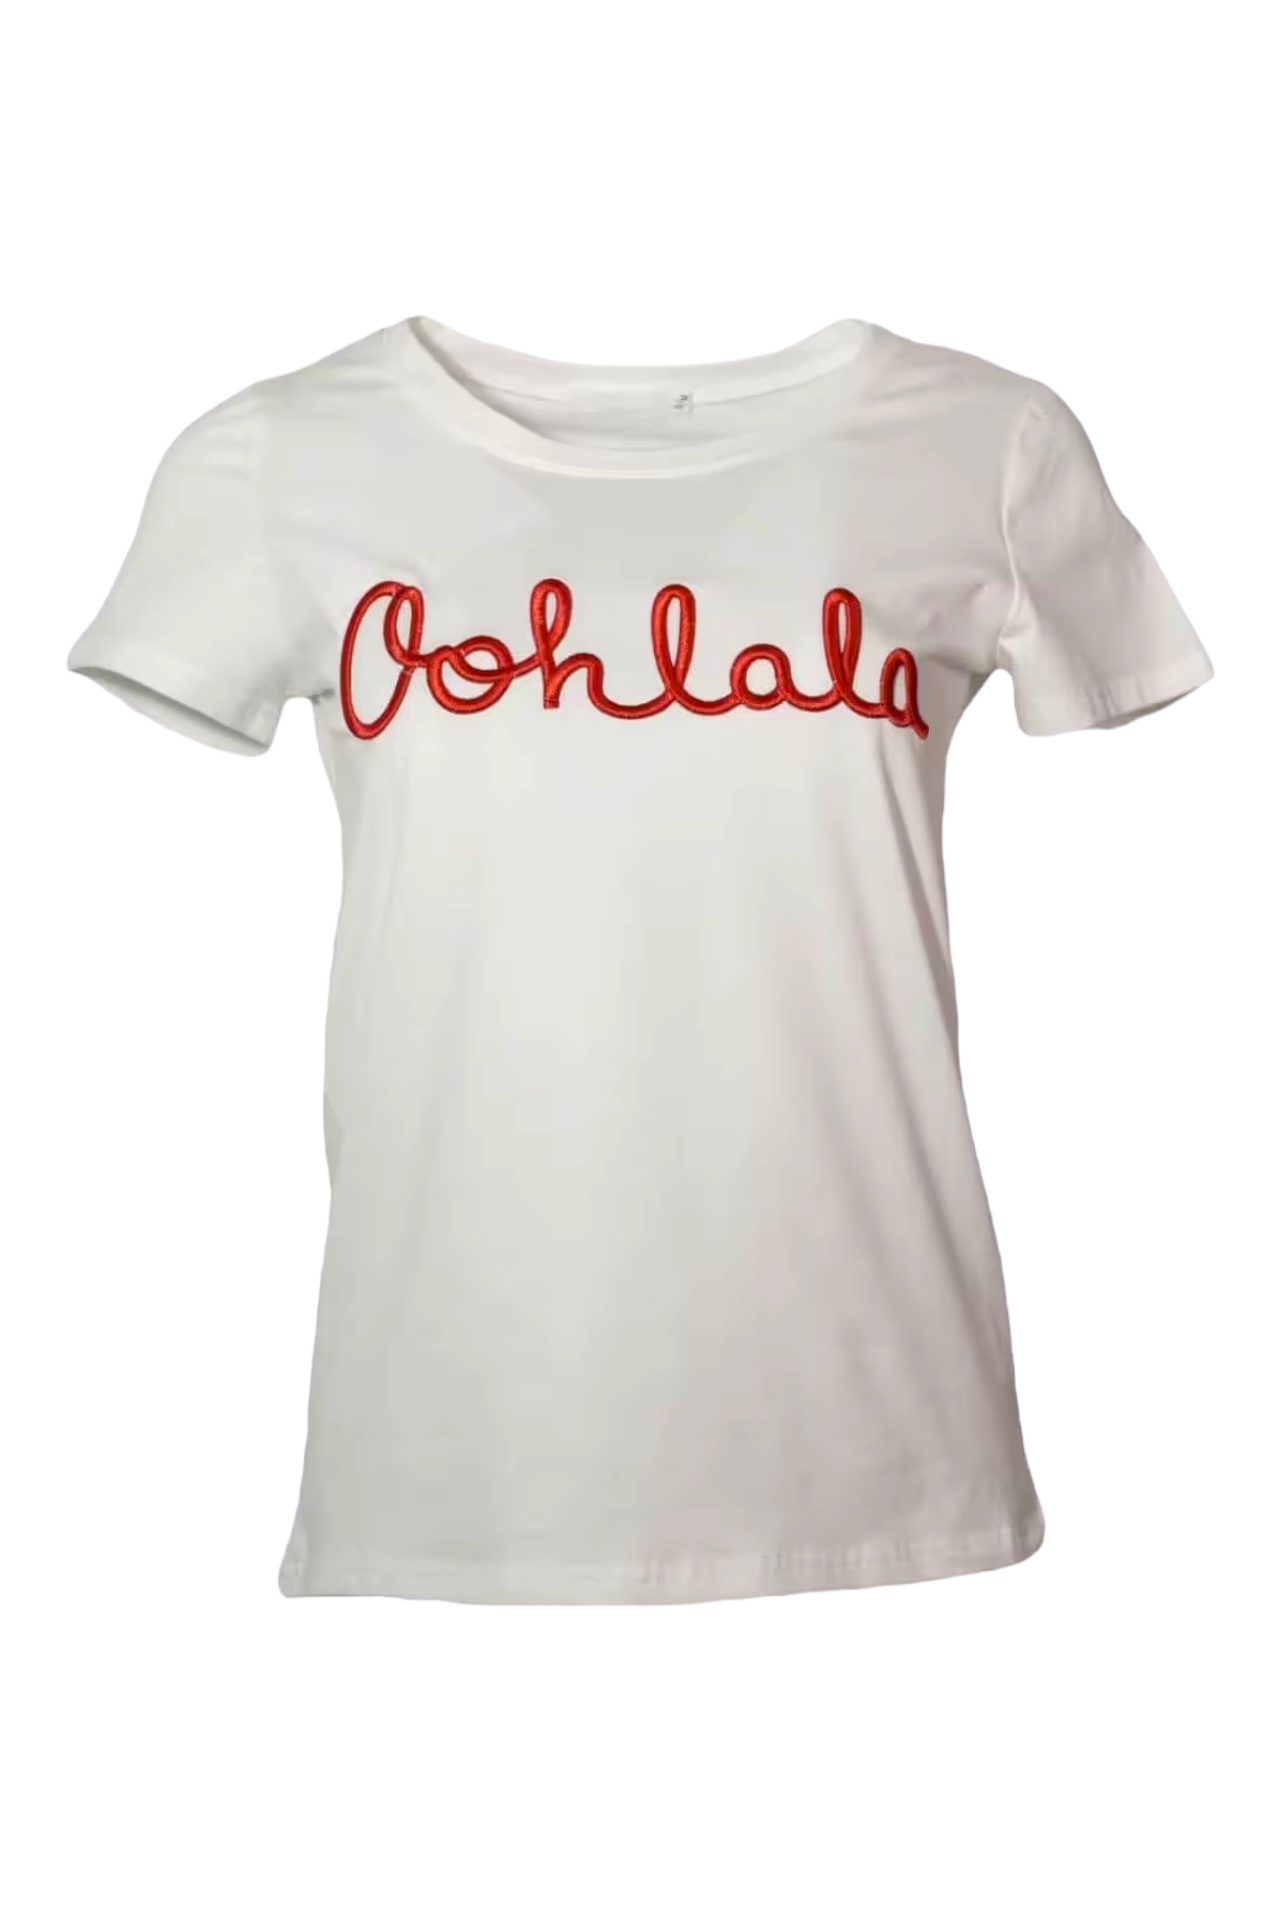 T-Shirt Oohlala